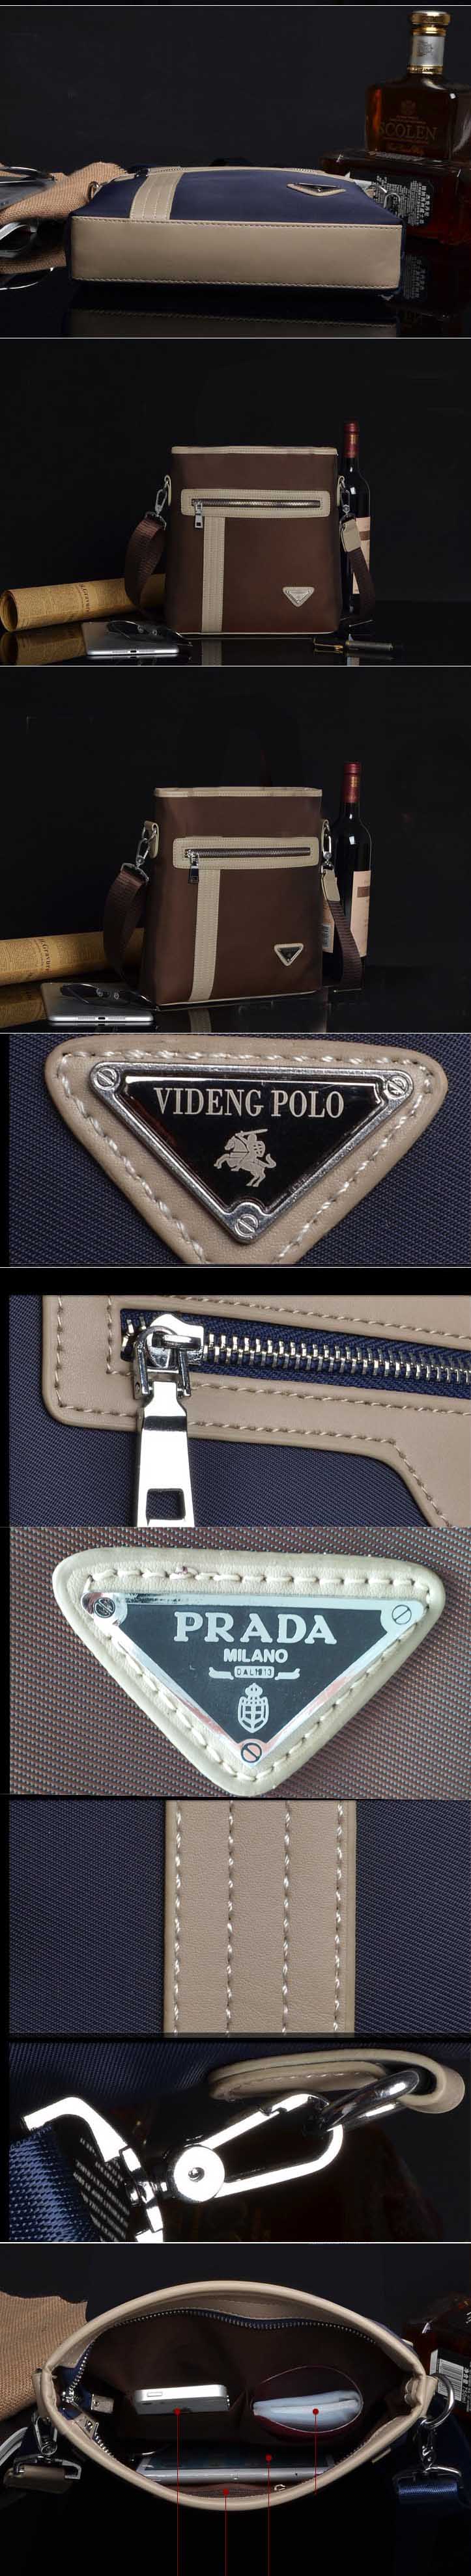 cari tas kerja pria terbaru dengan merk polo dan prada ? klik disini dan pesan online sekarang